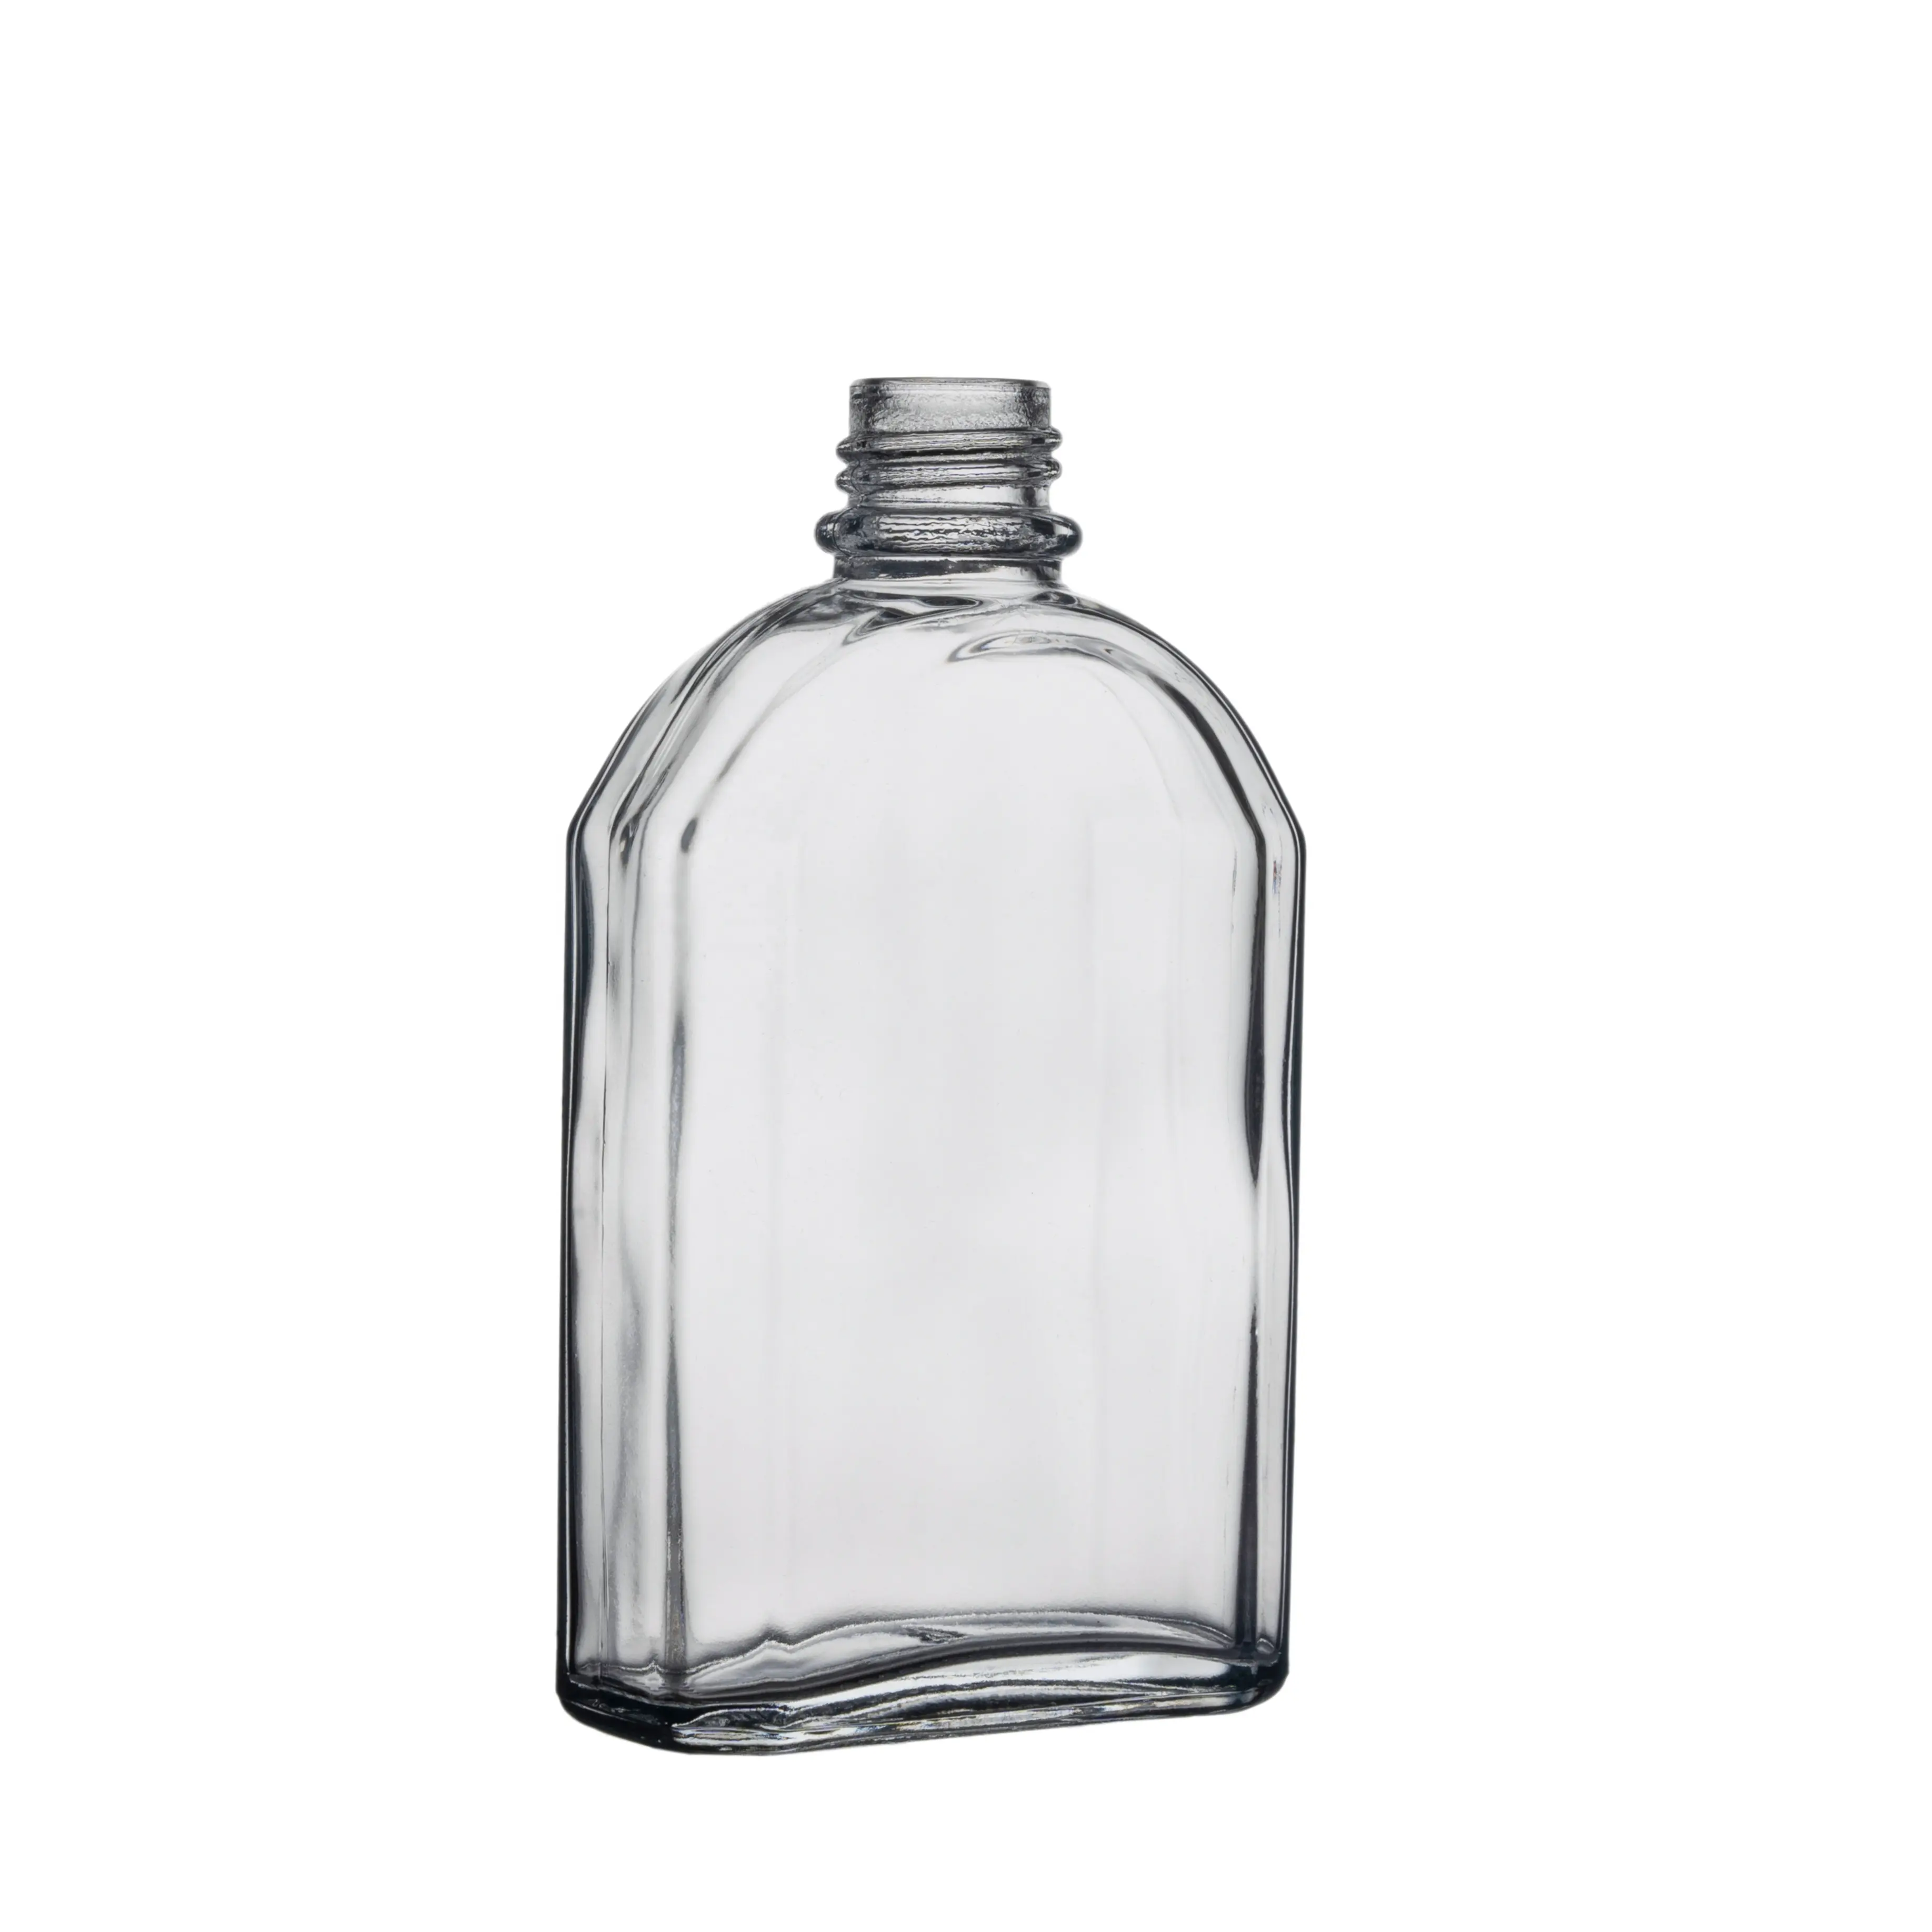 ברלין אריזה מכירה לוהטת ברור ריק זכוכית בקבוקון רוחות ויסקי יין מים בקבוק 200ml קר לחלוט קפה זכוכית בקבוק